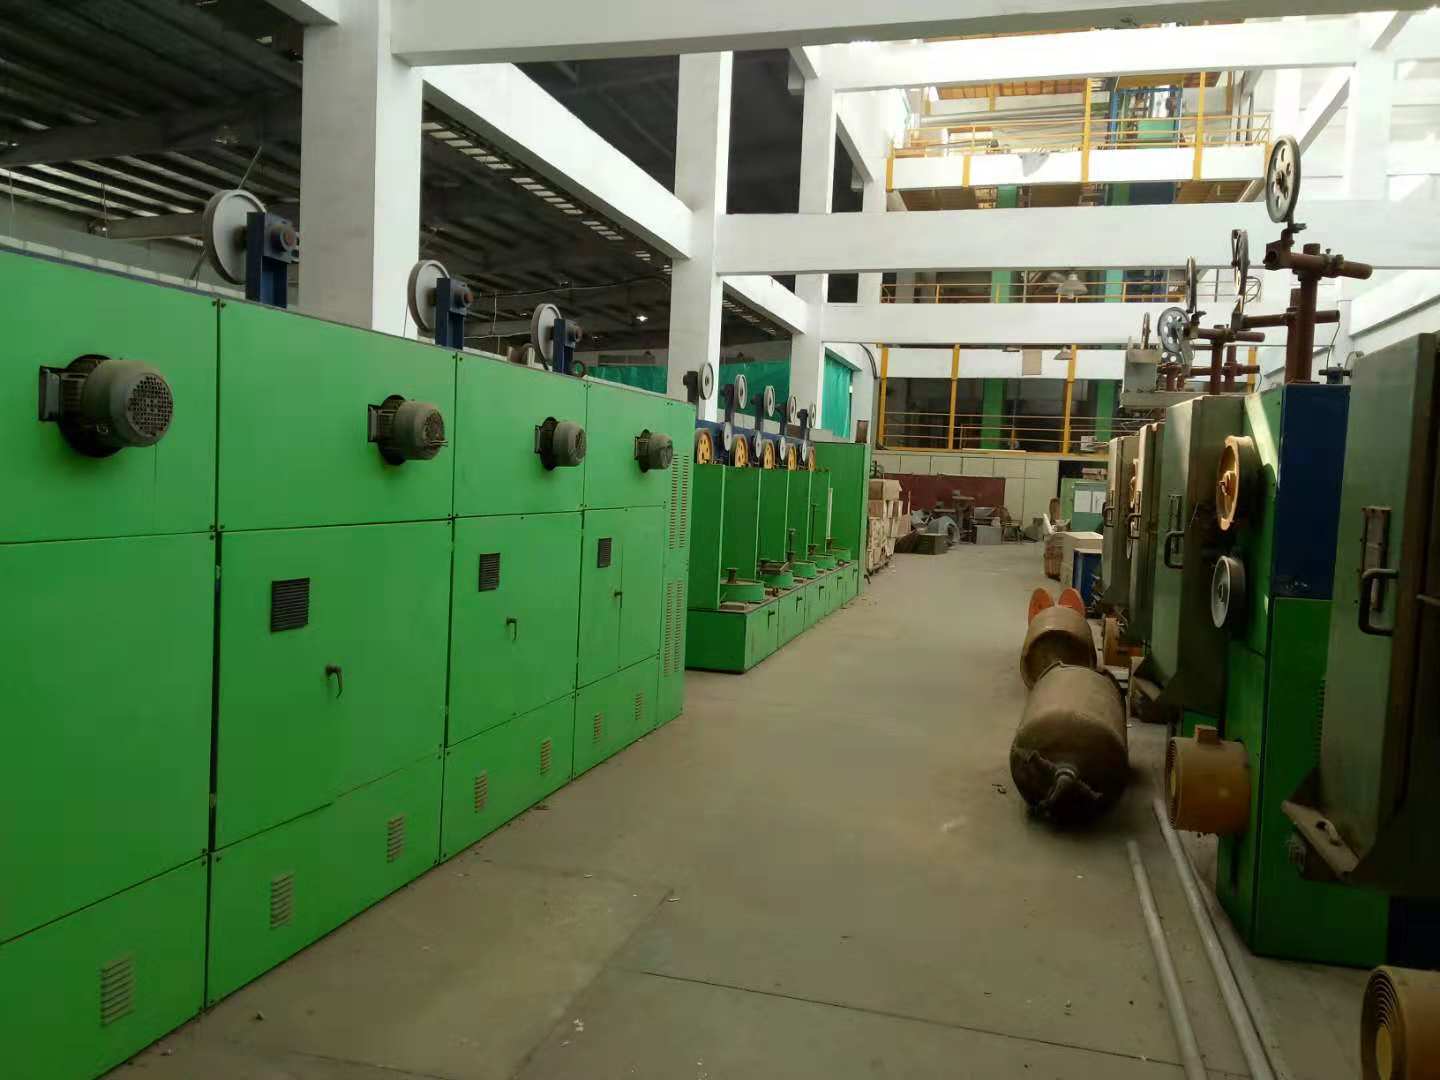 深圳坪山区整厂设备回收/化工厂设备回收/二手设备回收